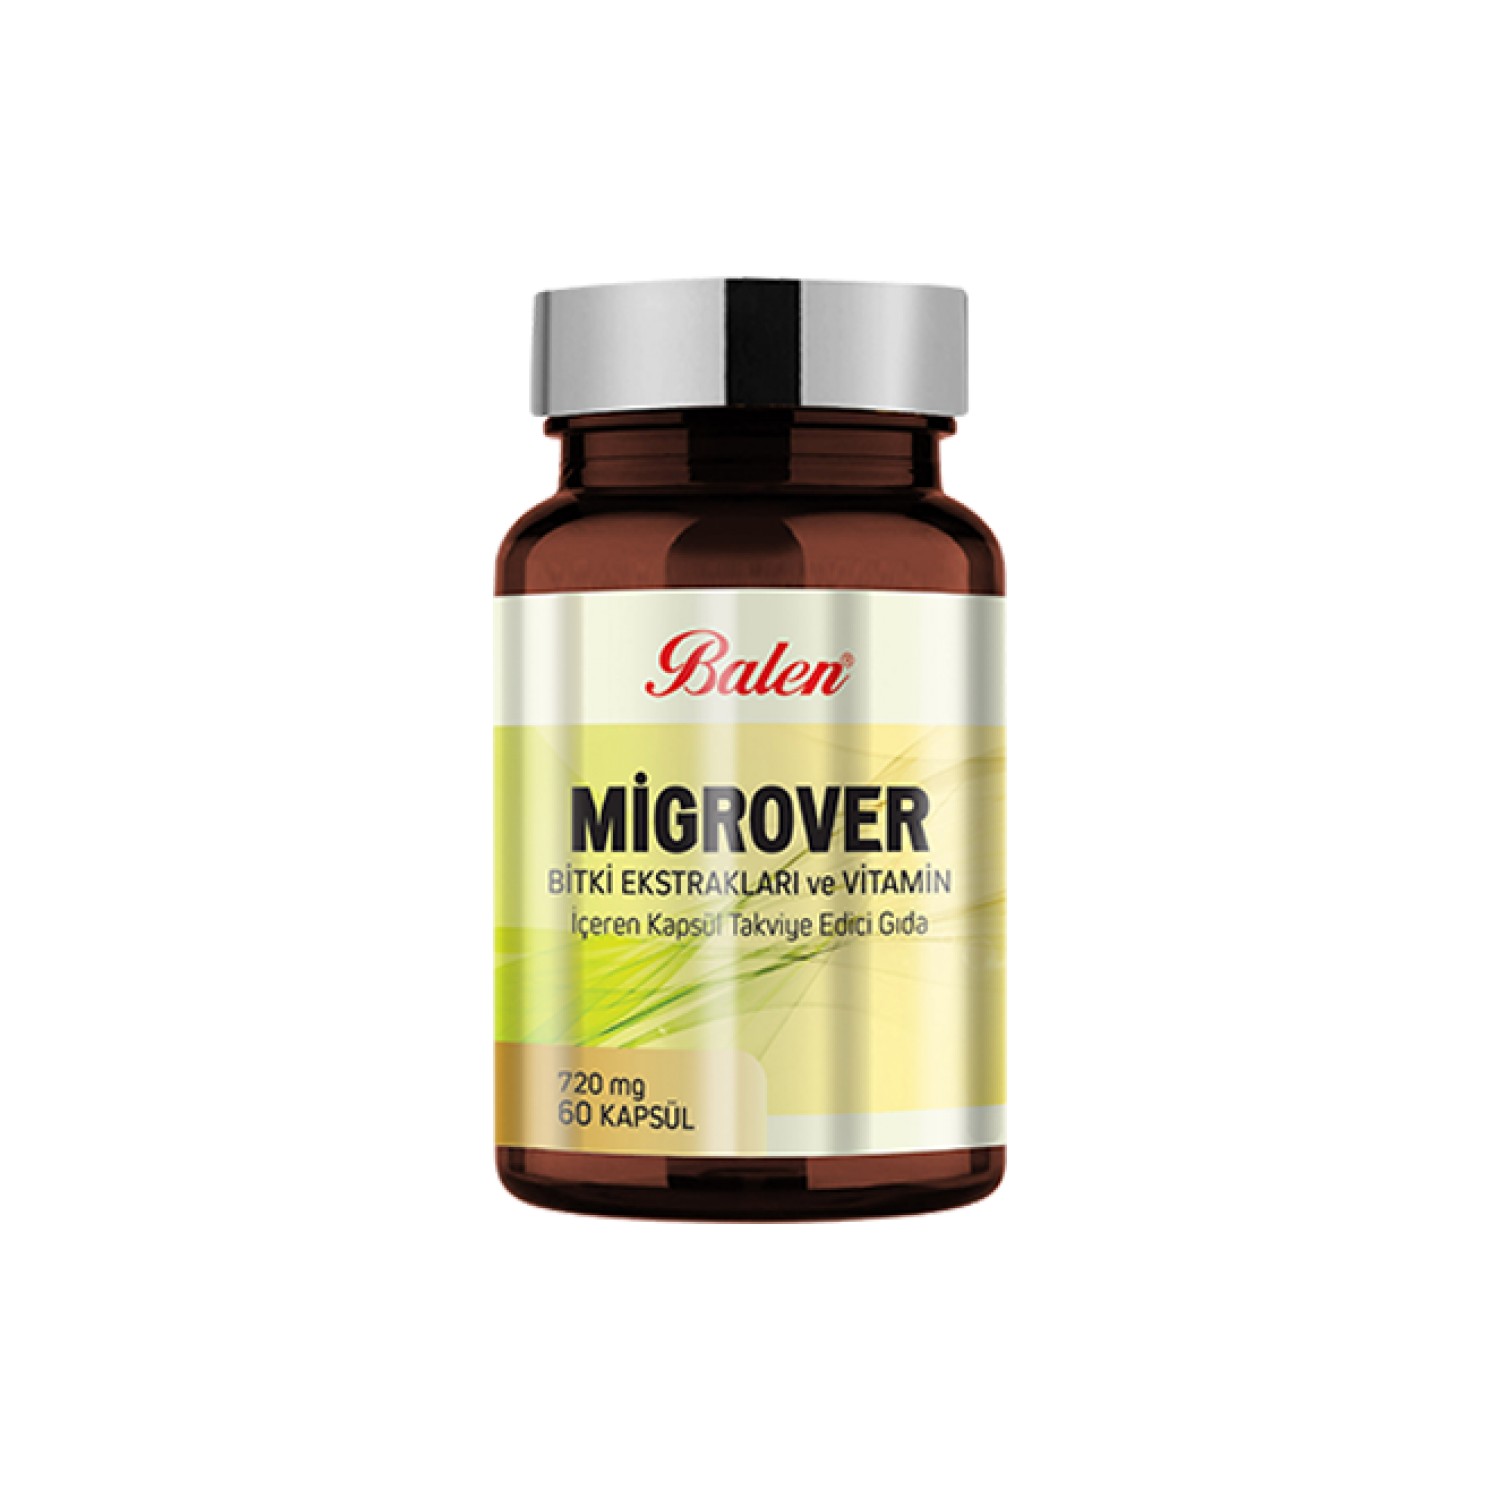 Экстракты трав и витаминов Migrover 720 мг, 60 капсул пищевая добавка balen migrover с растительными экстрактами и витаминами 720 мг 3 упаковки по 60 капсул